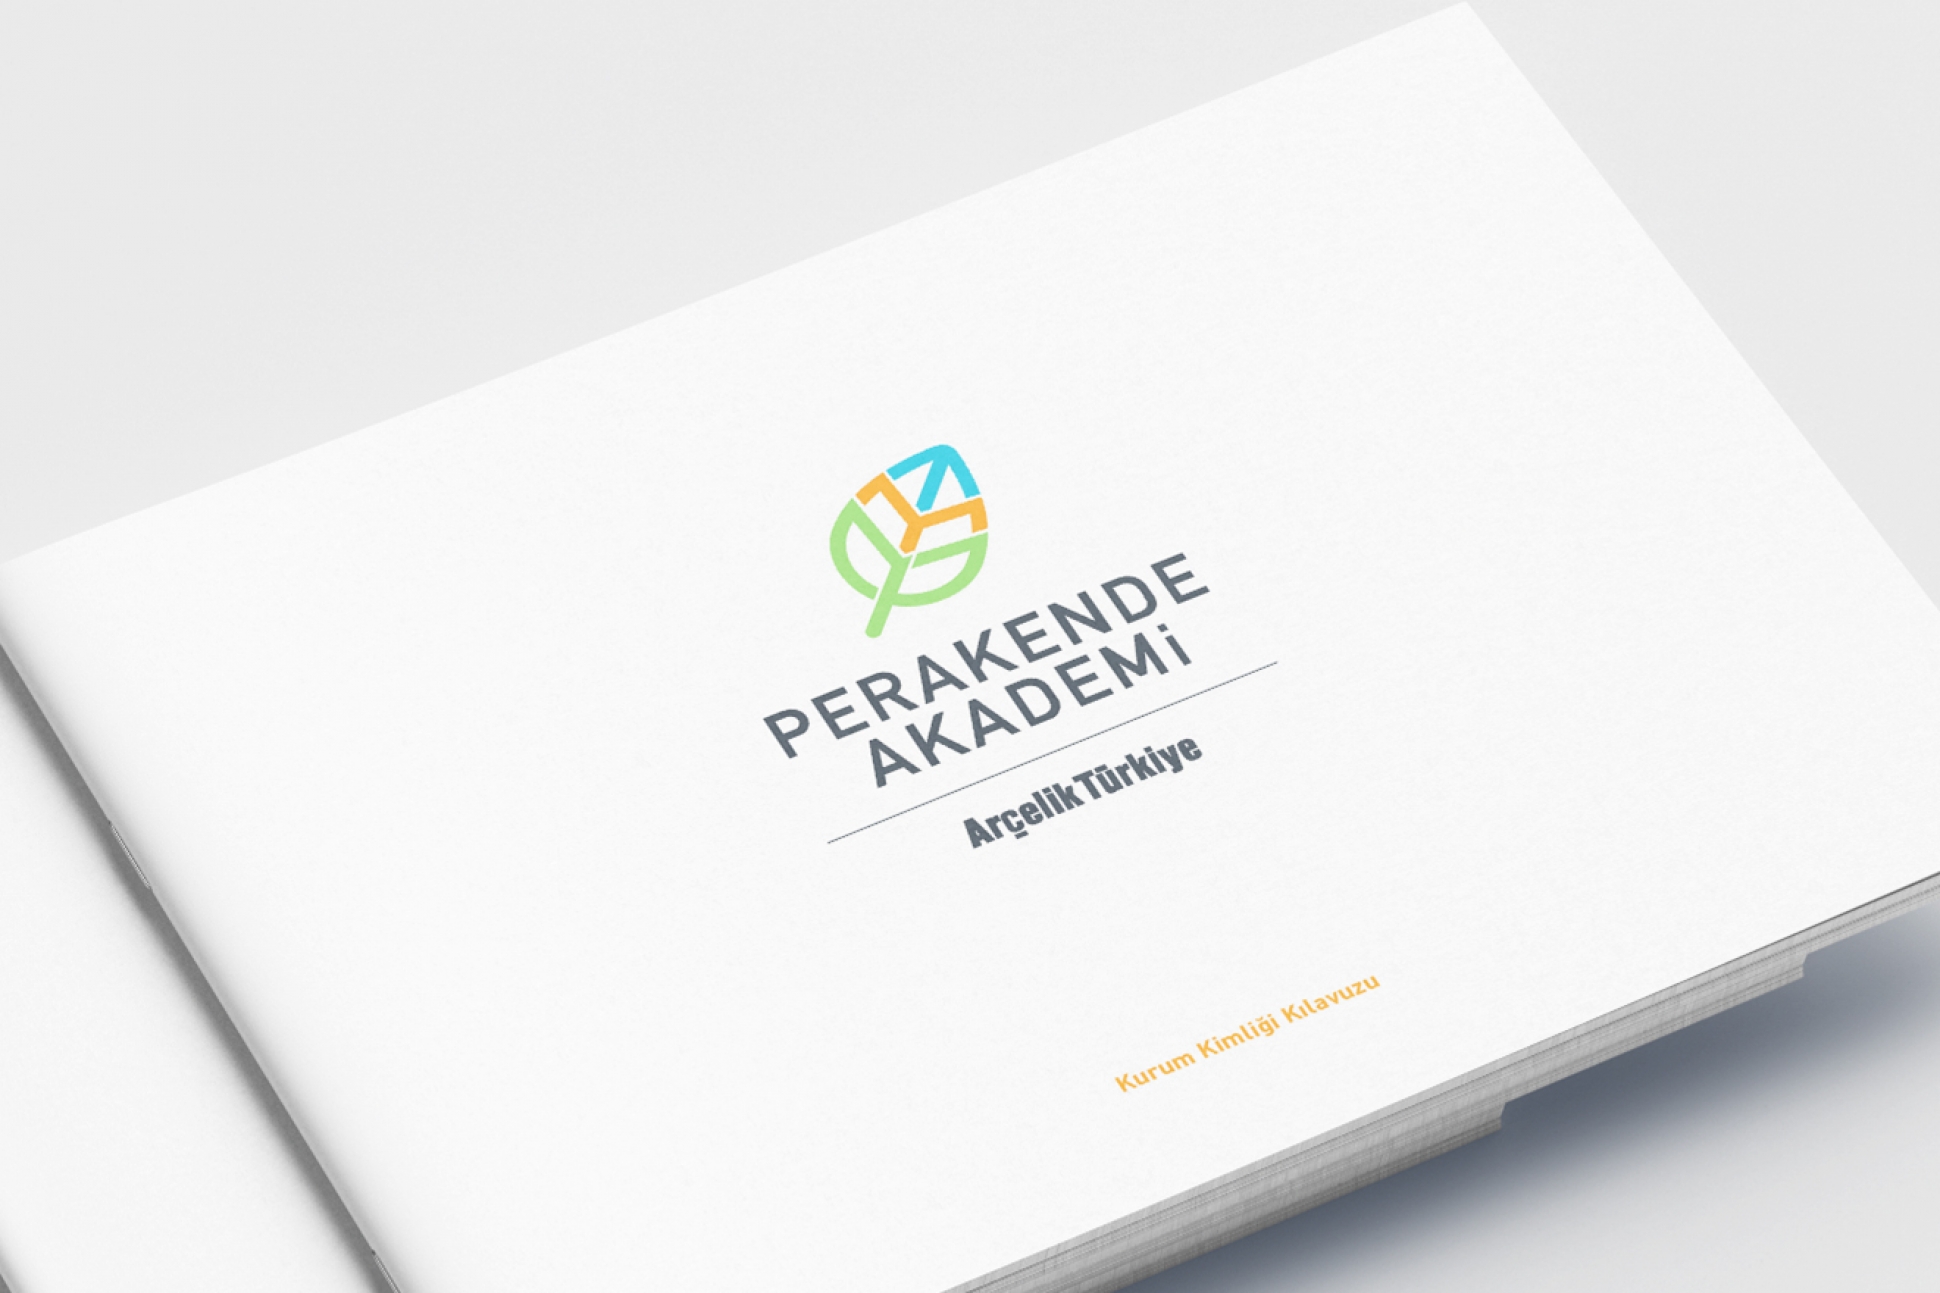 perakende_akademi